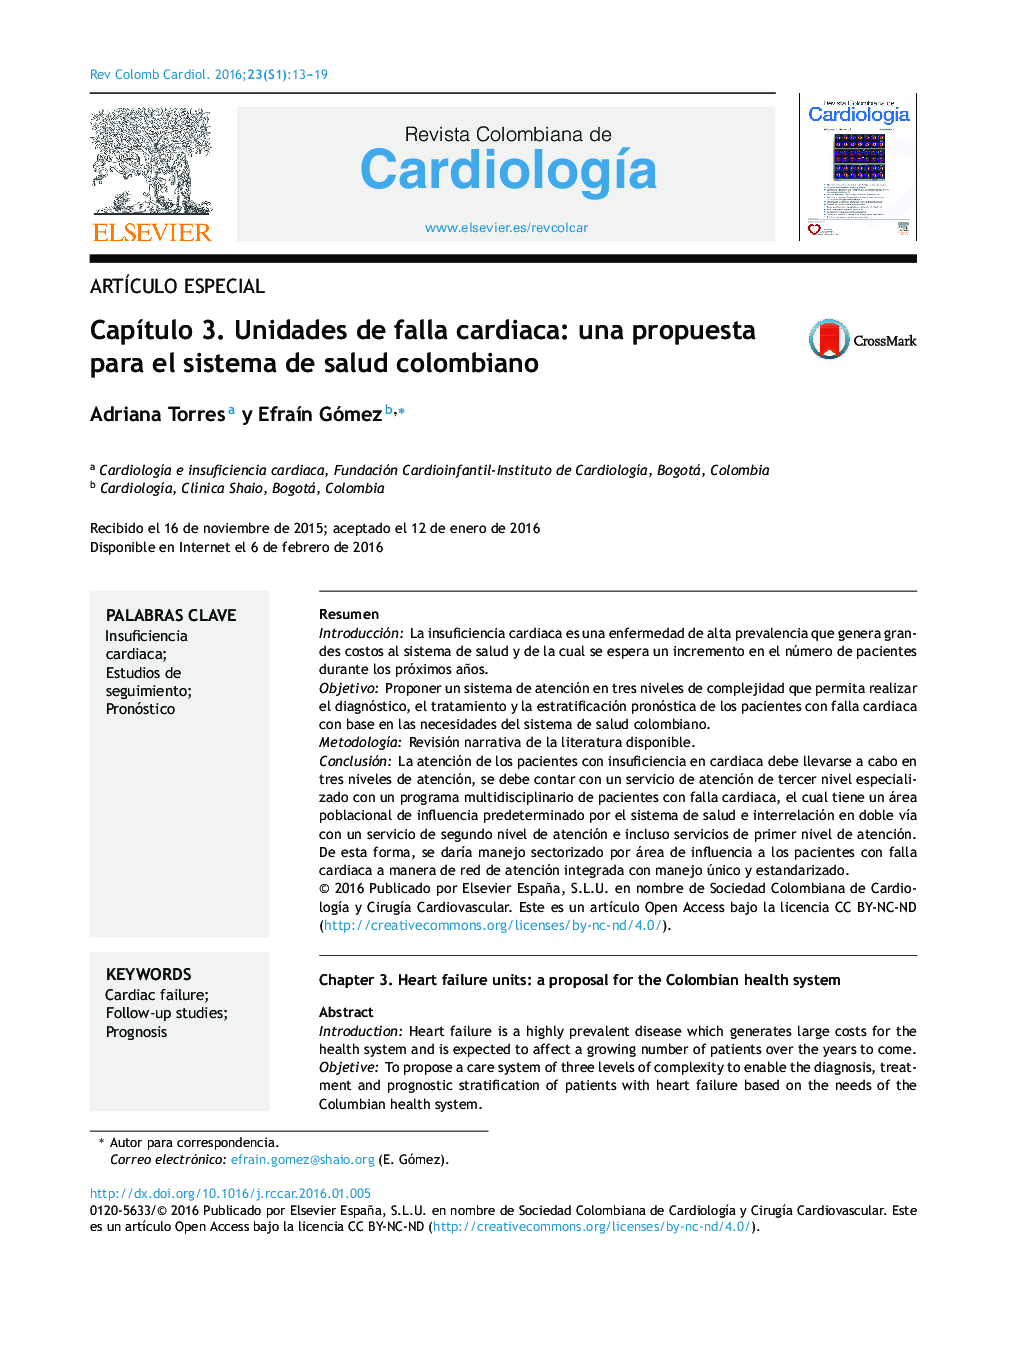 Capítulo 3. Unidades de falla cardiaca: una propuesta para el sistema de salud colombiano